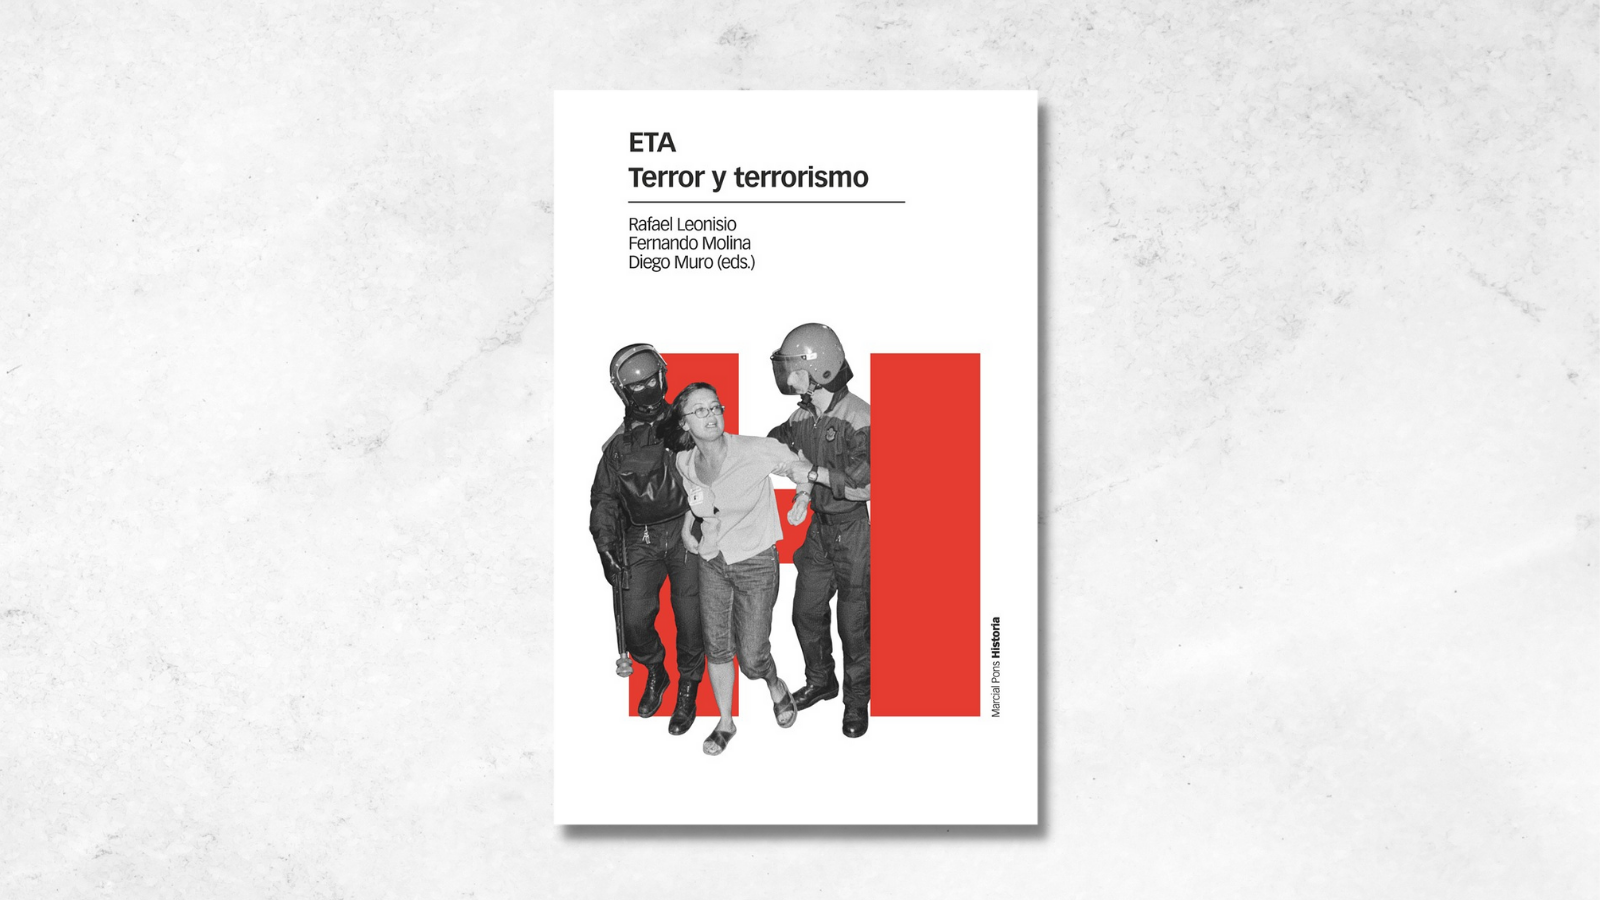 Presentación del libro "ETA. Terror y terrorismo"